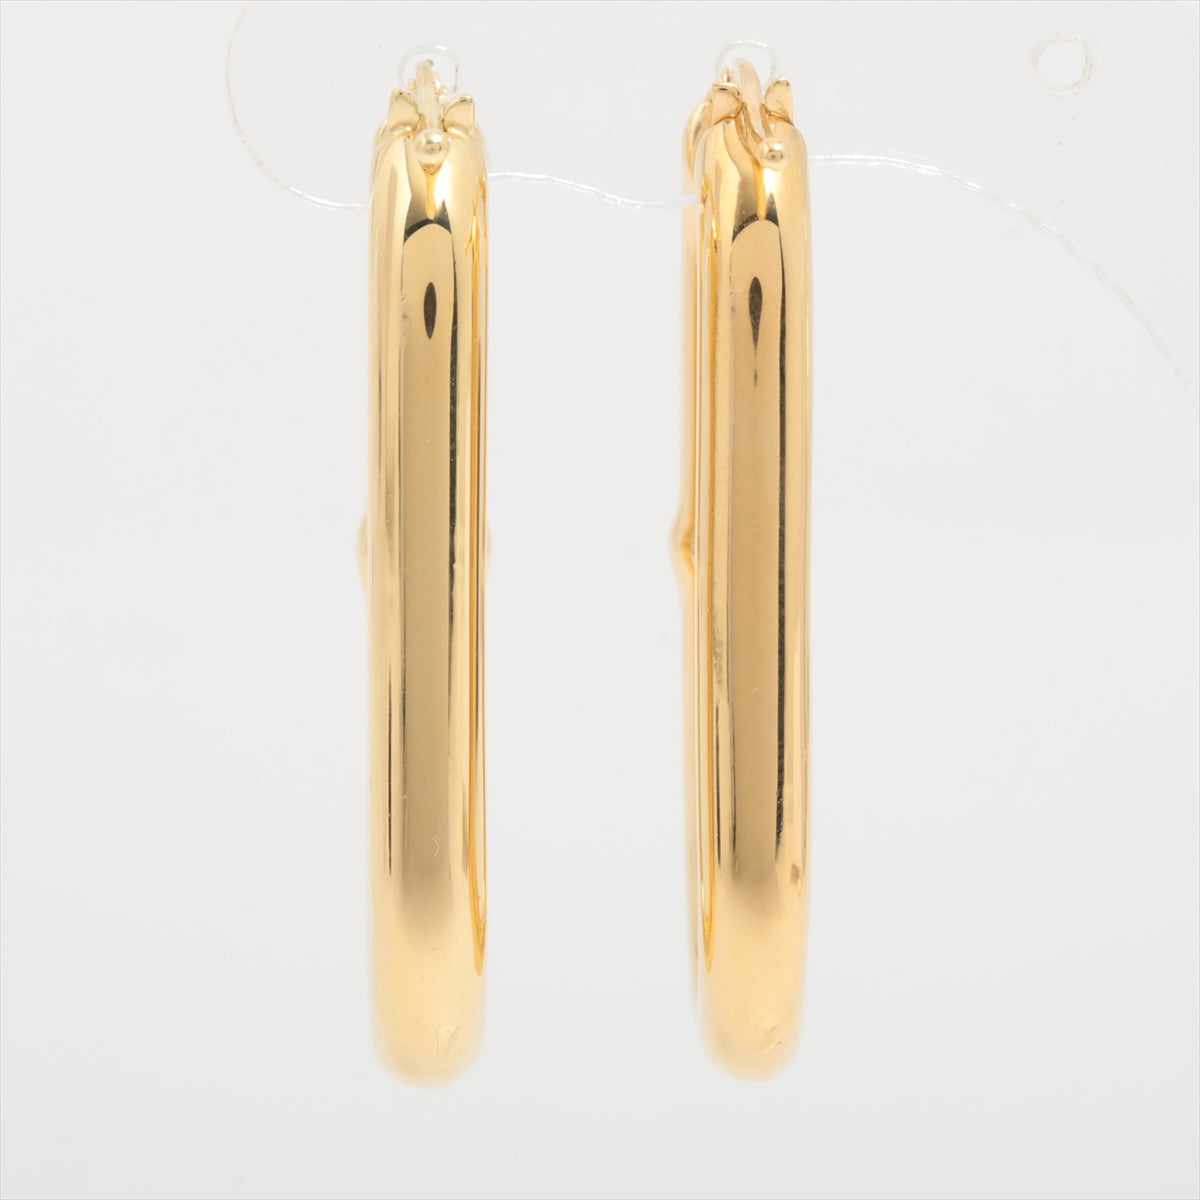 Bottega Veneta Chain Piercing jewelry (for both ears) 925 17.0g Gold